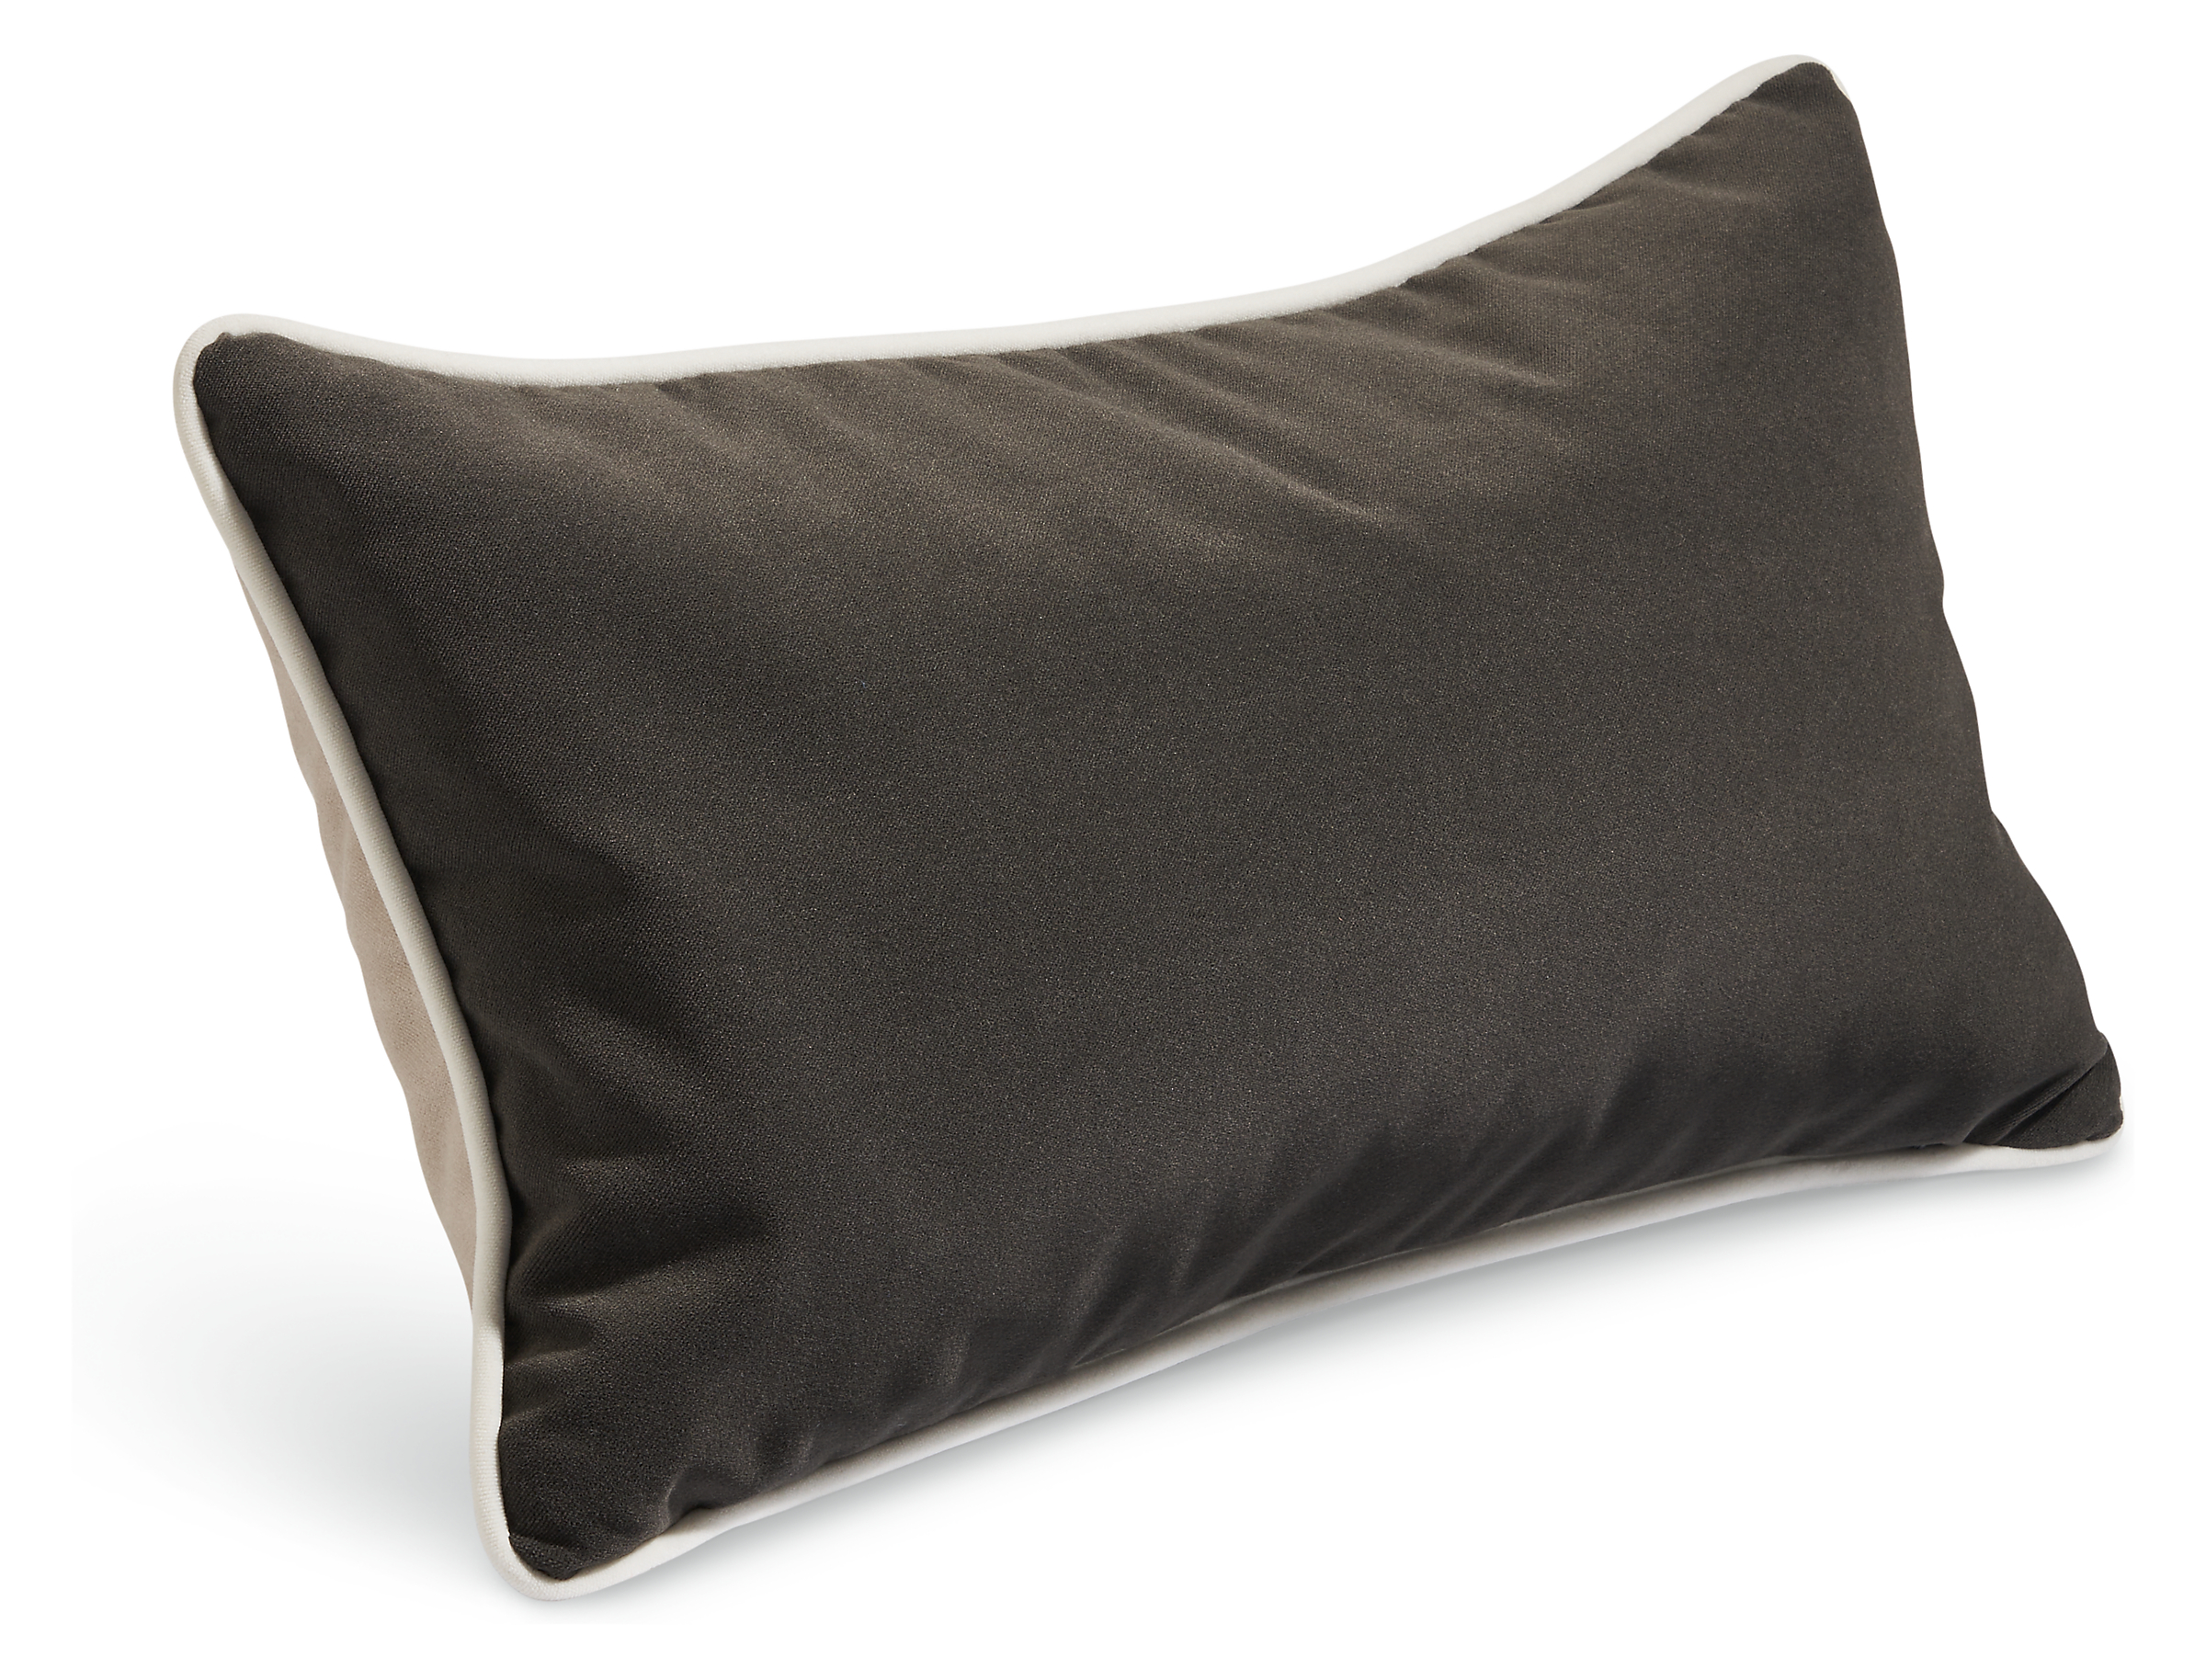 Jinx 22w 13h Outdoor Pillow